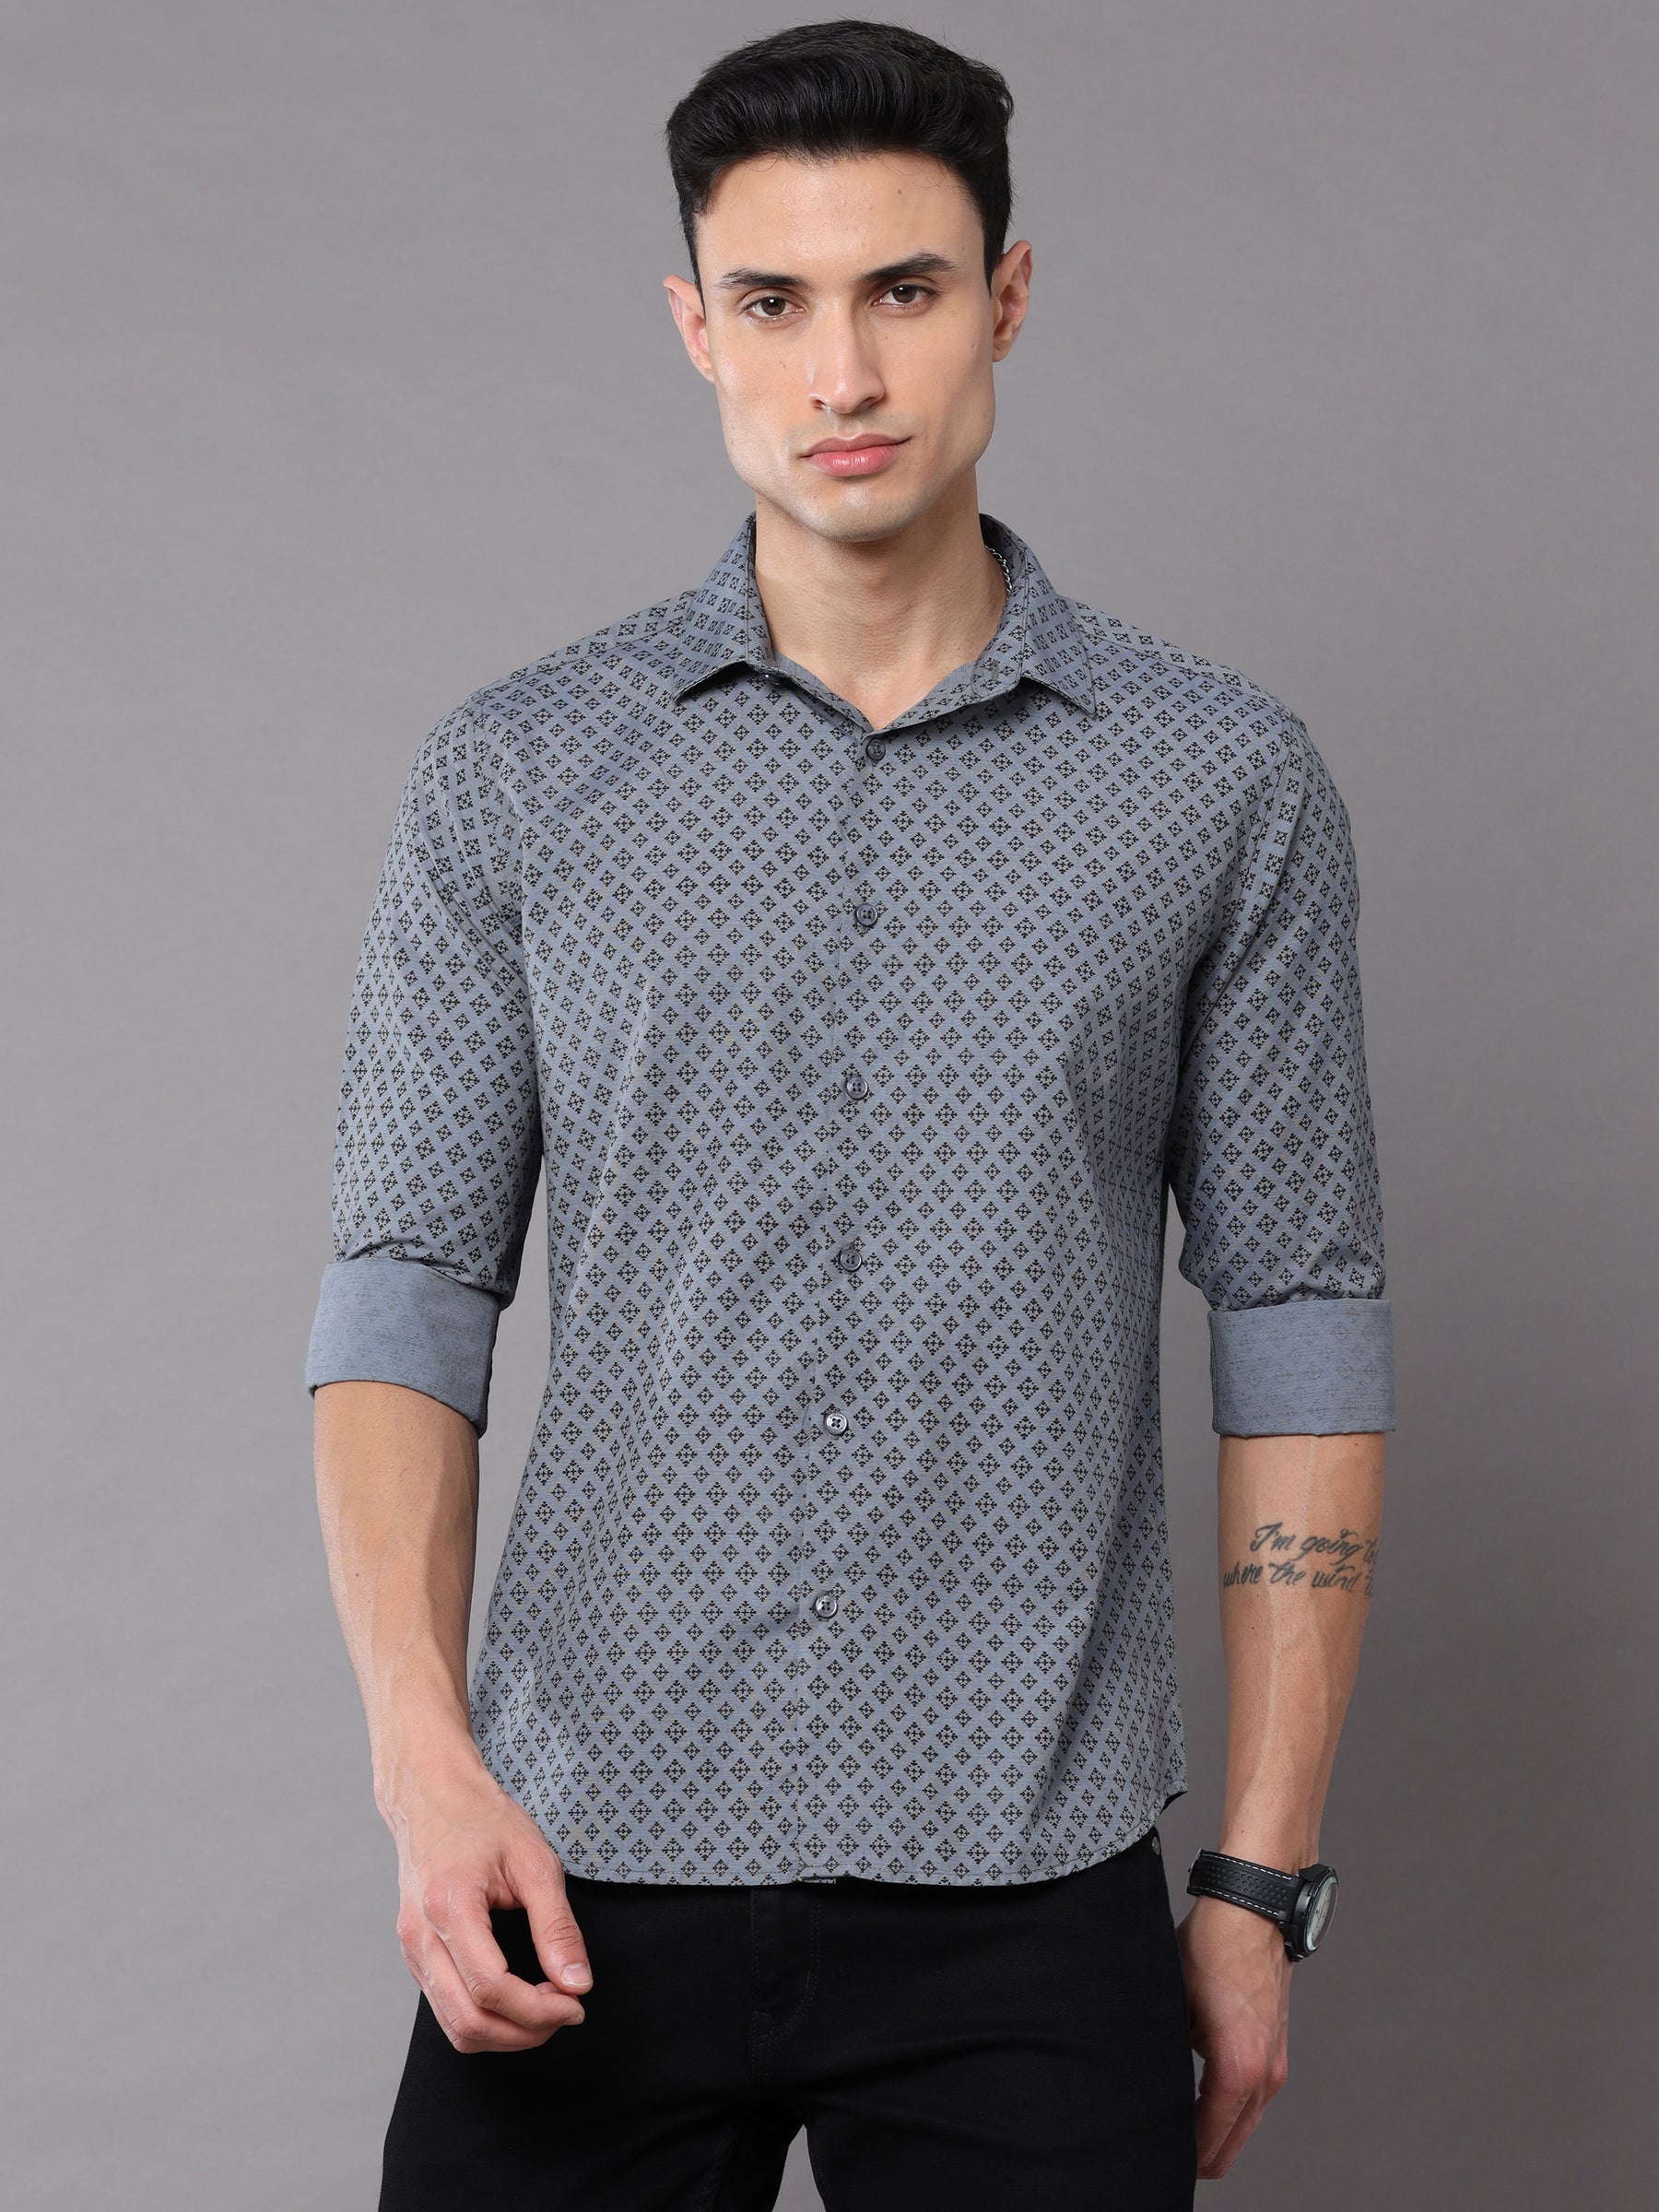 Moroccan Grey Shirt Printed Shirt Bushirt   